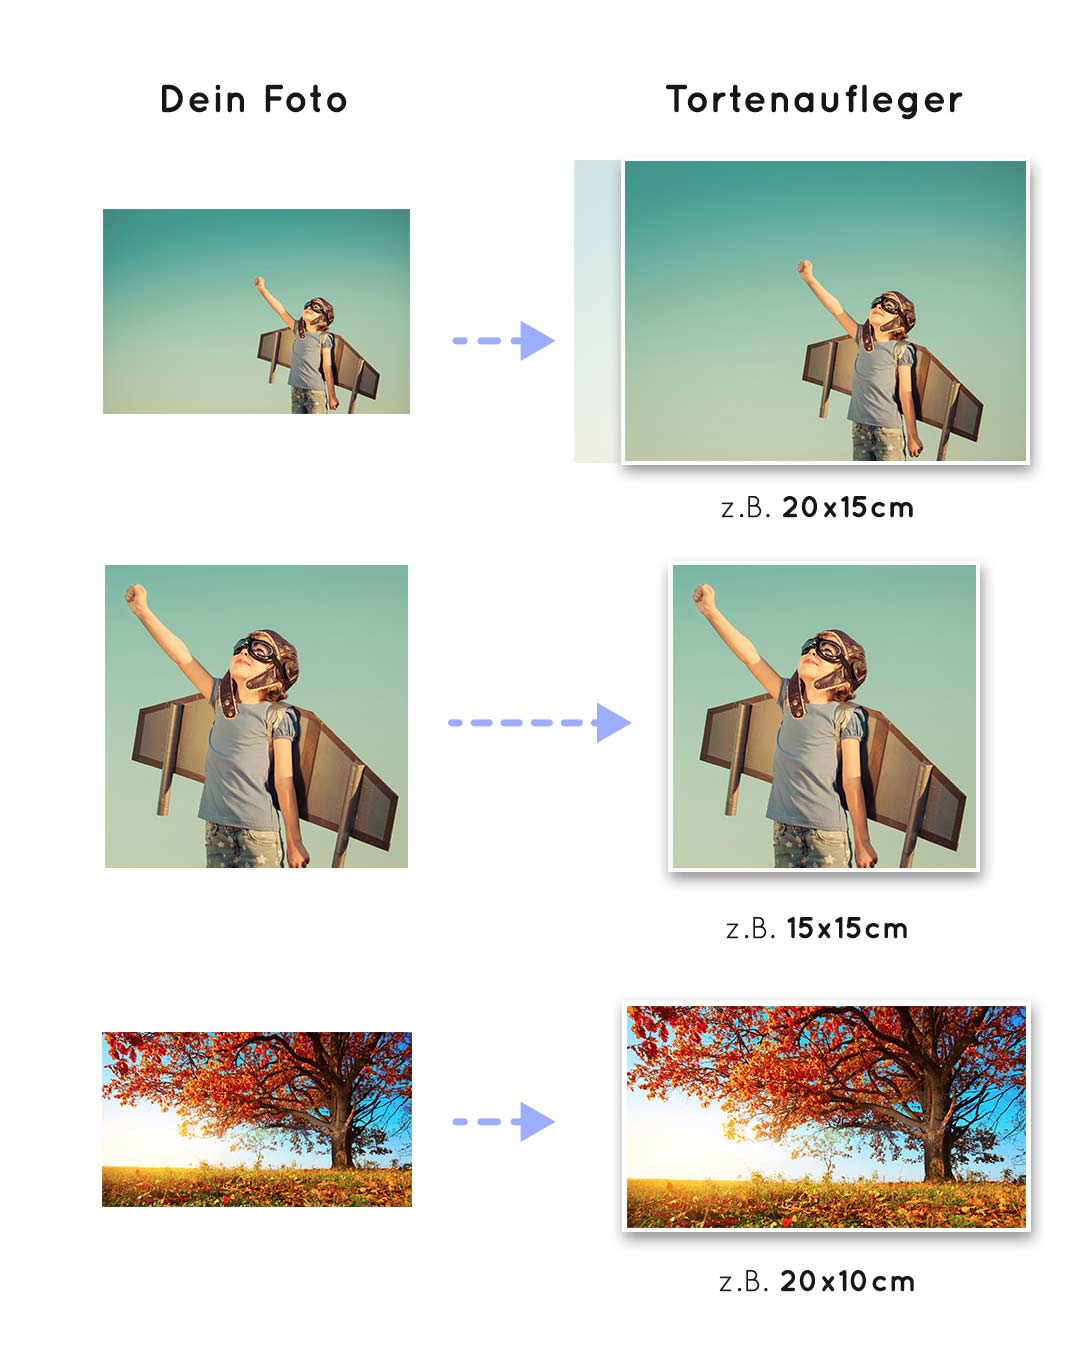 Diese Grafik verdeutlicht, wie wir dein Foto in das gewünschte Format einpassen.